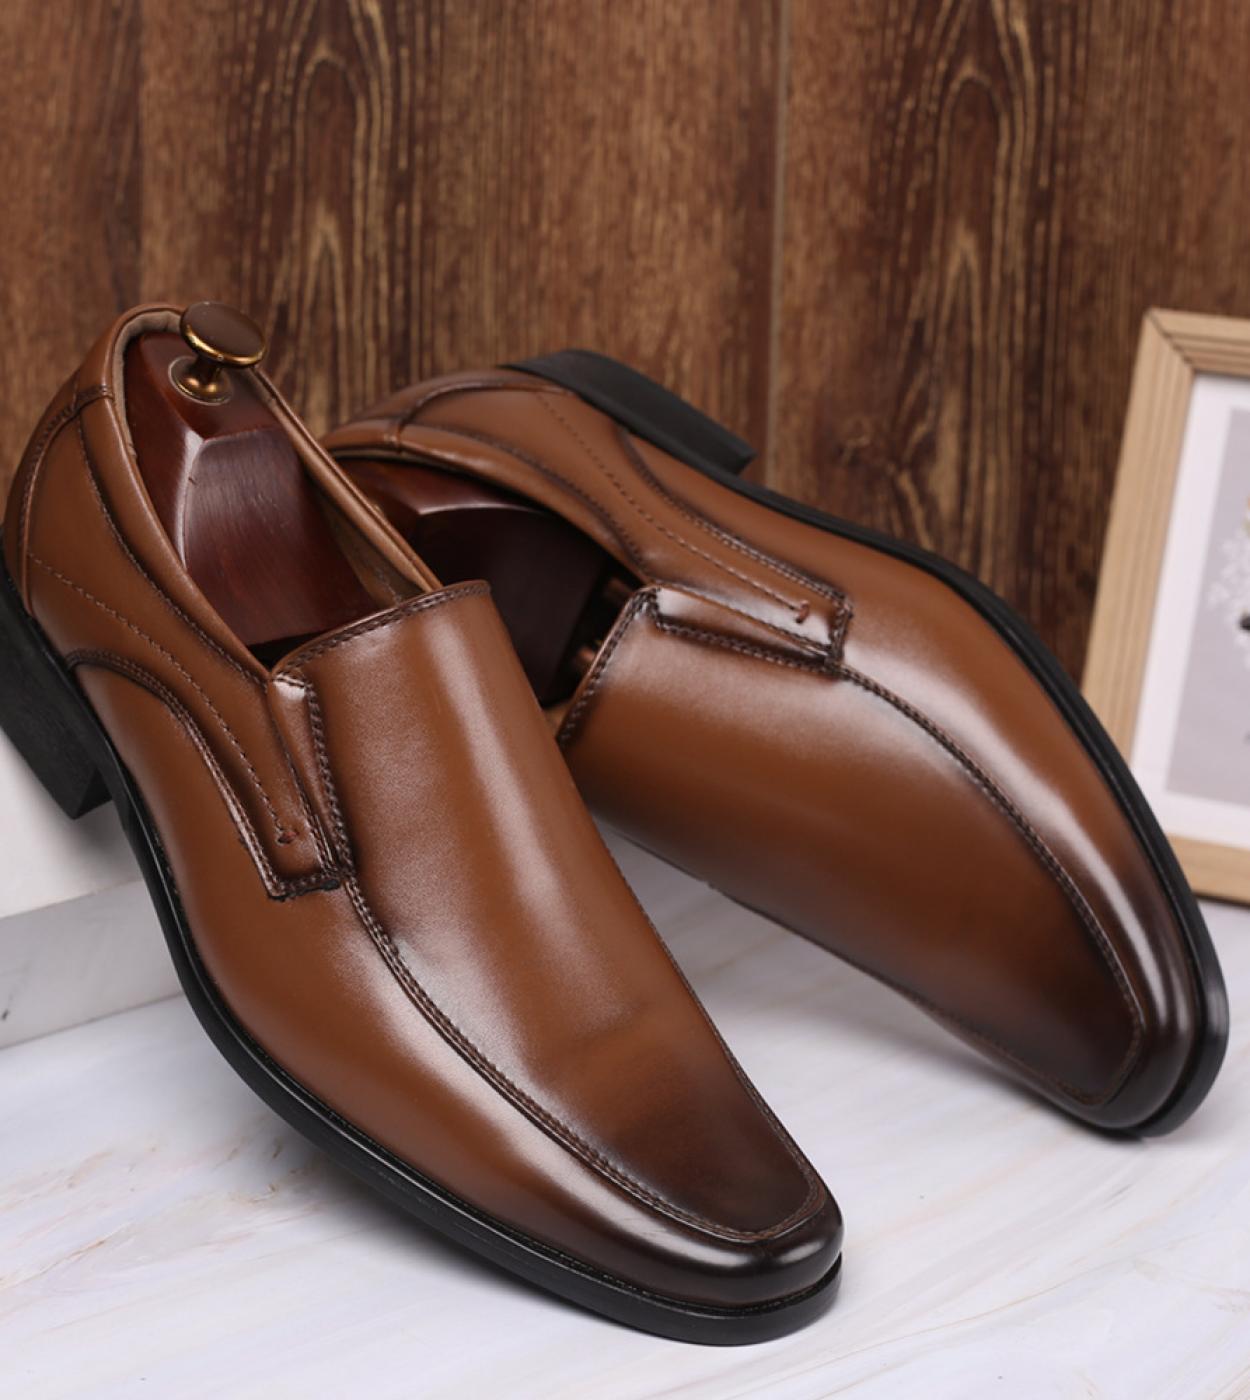 خريف جديد رجال الأعمال Oxfords حذاء كاجوال مجموعة من قدم فستان أحذية ذكر مكتب الزفاف أحذية جلدية رجالي أحذية رسمية